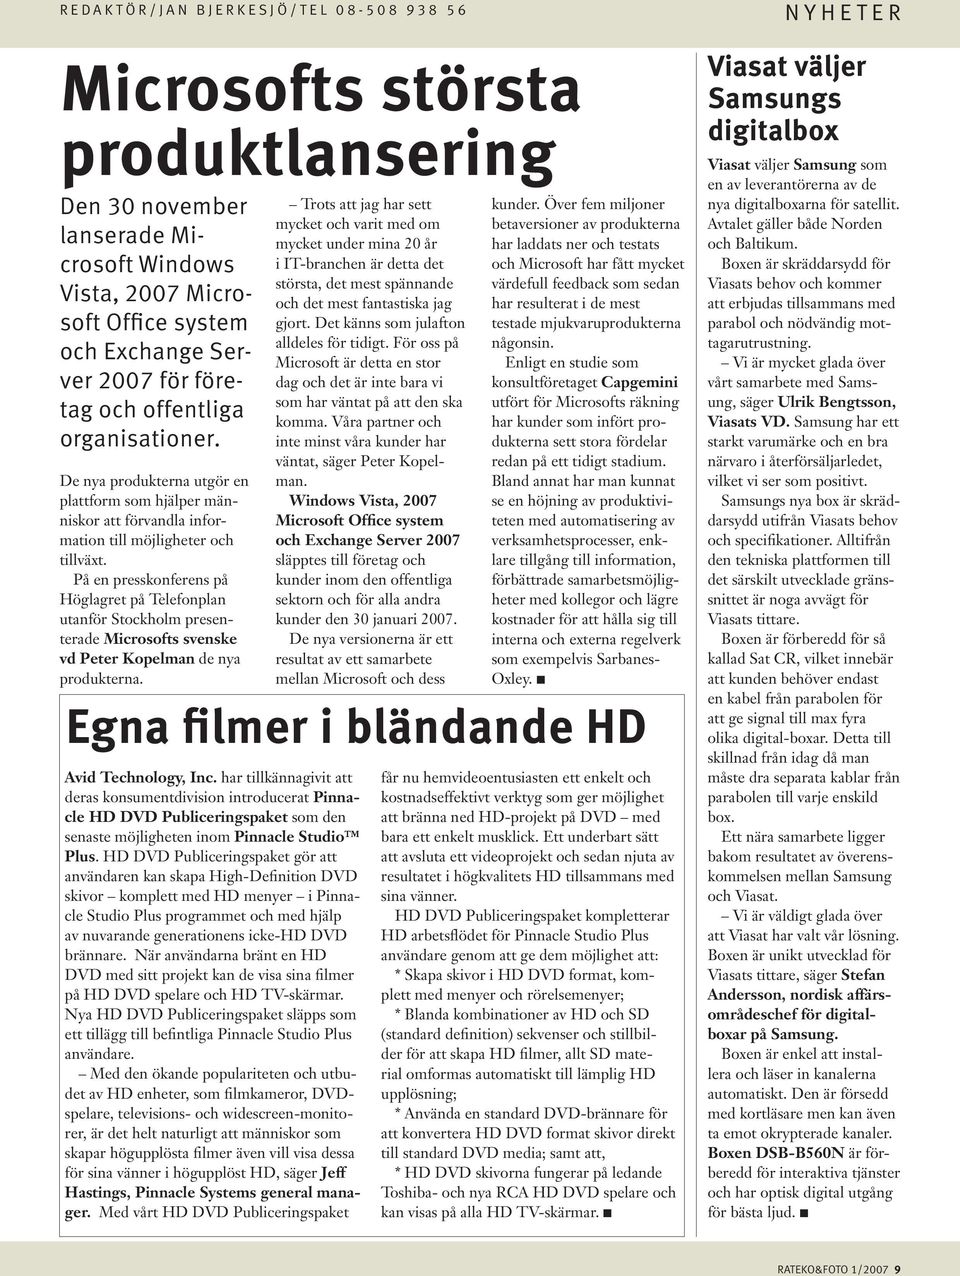 På en presskonferens på Höglagret på Telefonplan utanför Stockholm presenterade Microsofts svenske vd Peter Kopelman de nya produkterna. Egna filmer i bländande HD Avid Technology, Inc.